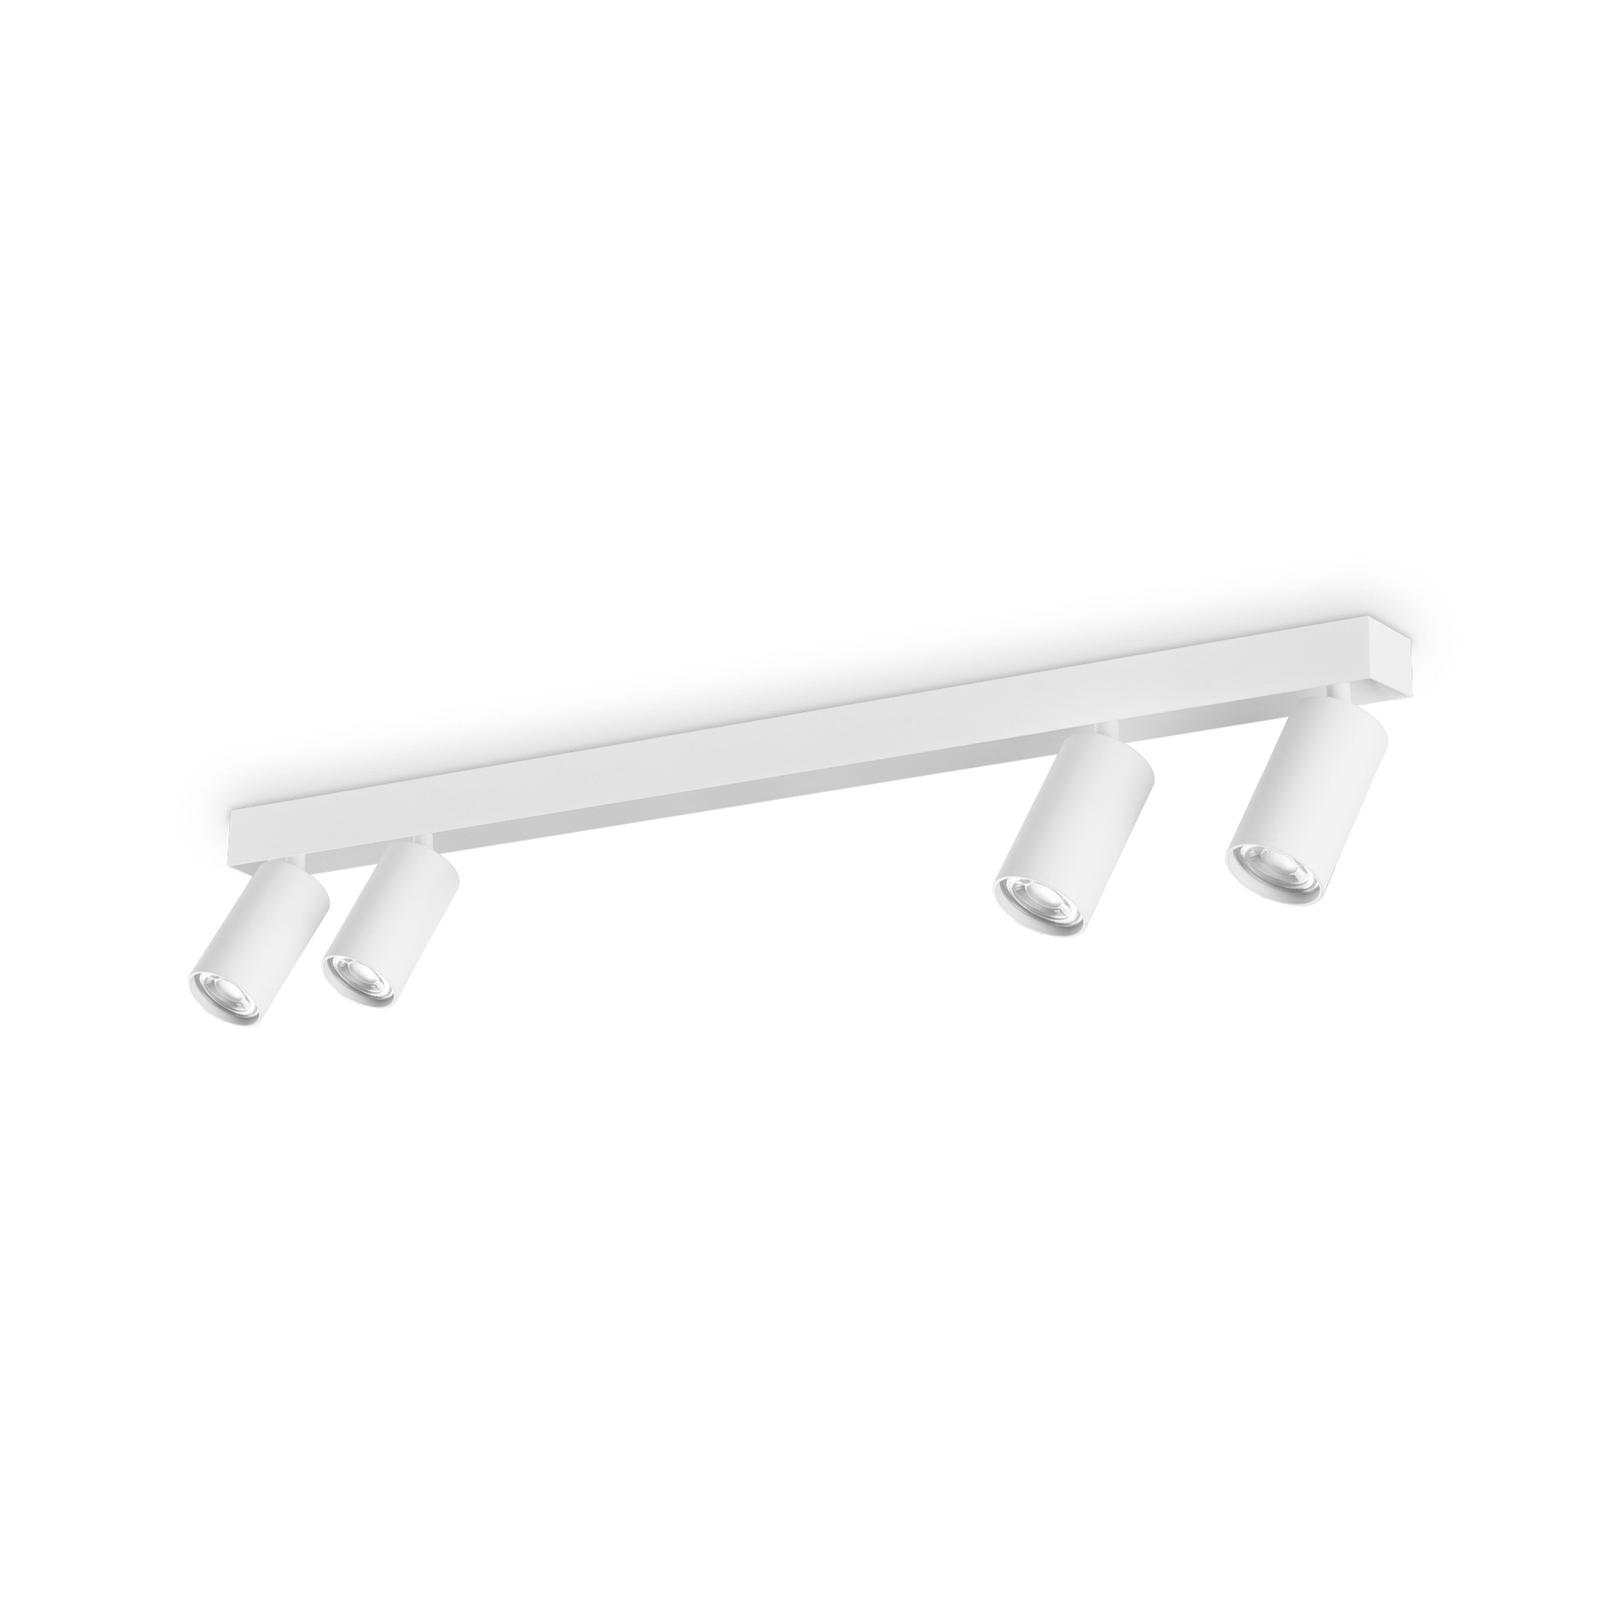 Ideal Lux Profilo downlight, white, 4-bulb, metal